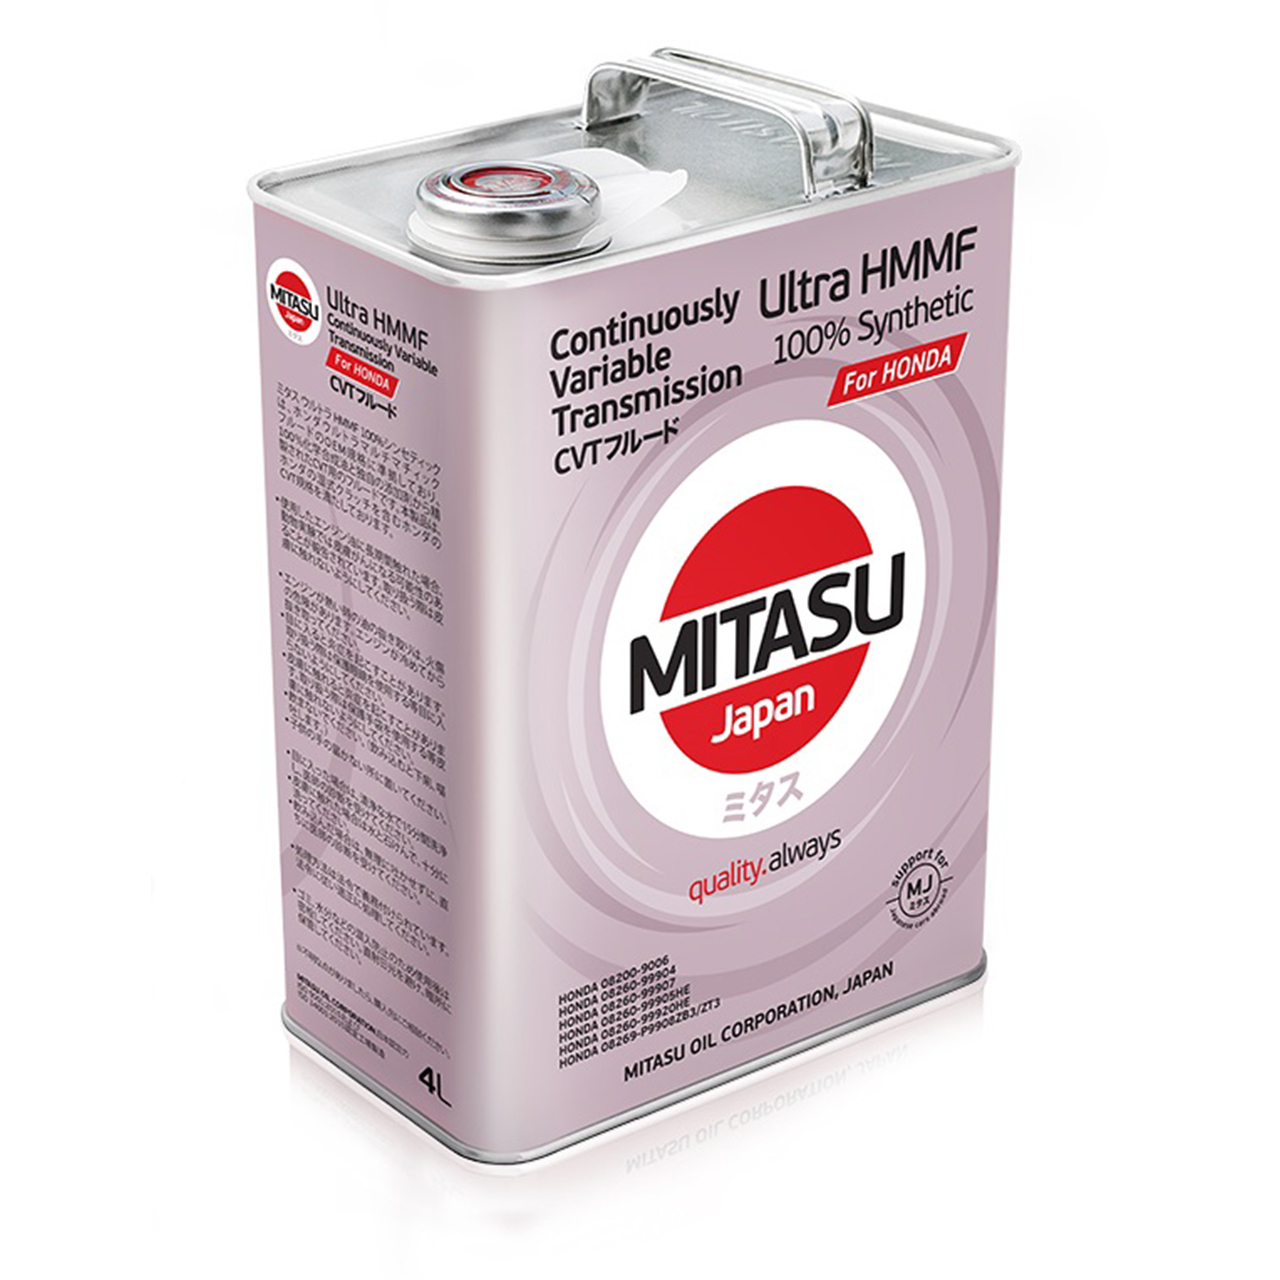 Купить запчасть MITASU - MJ3174 Жидкость для АКПП MITASU MULTI MATIC FLUID (for HONDA Ultra HMMF) 4л синтетика MJ317 (1/6) Япония